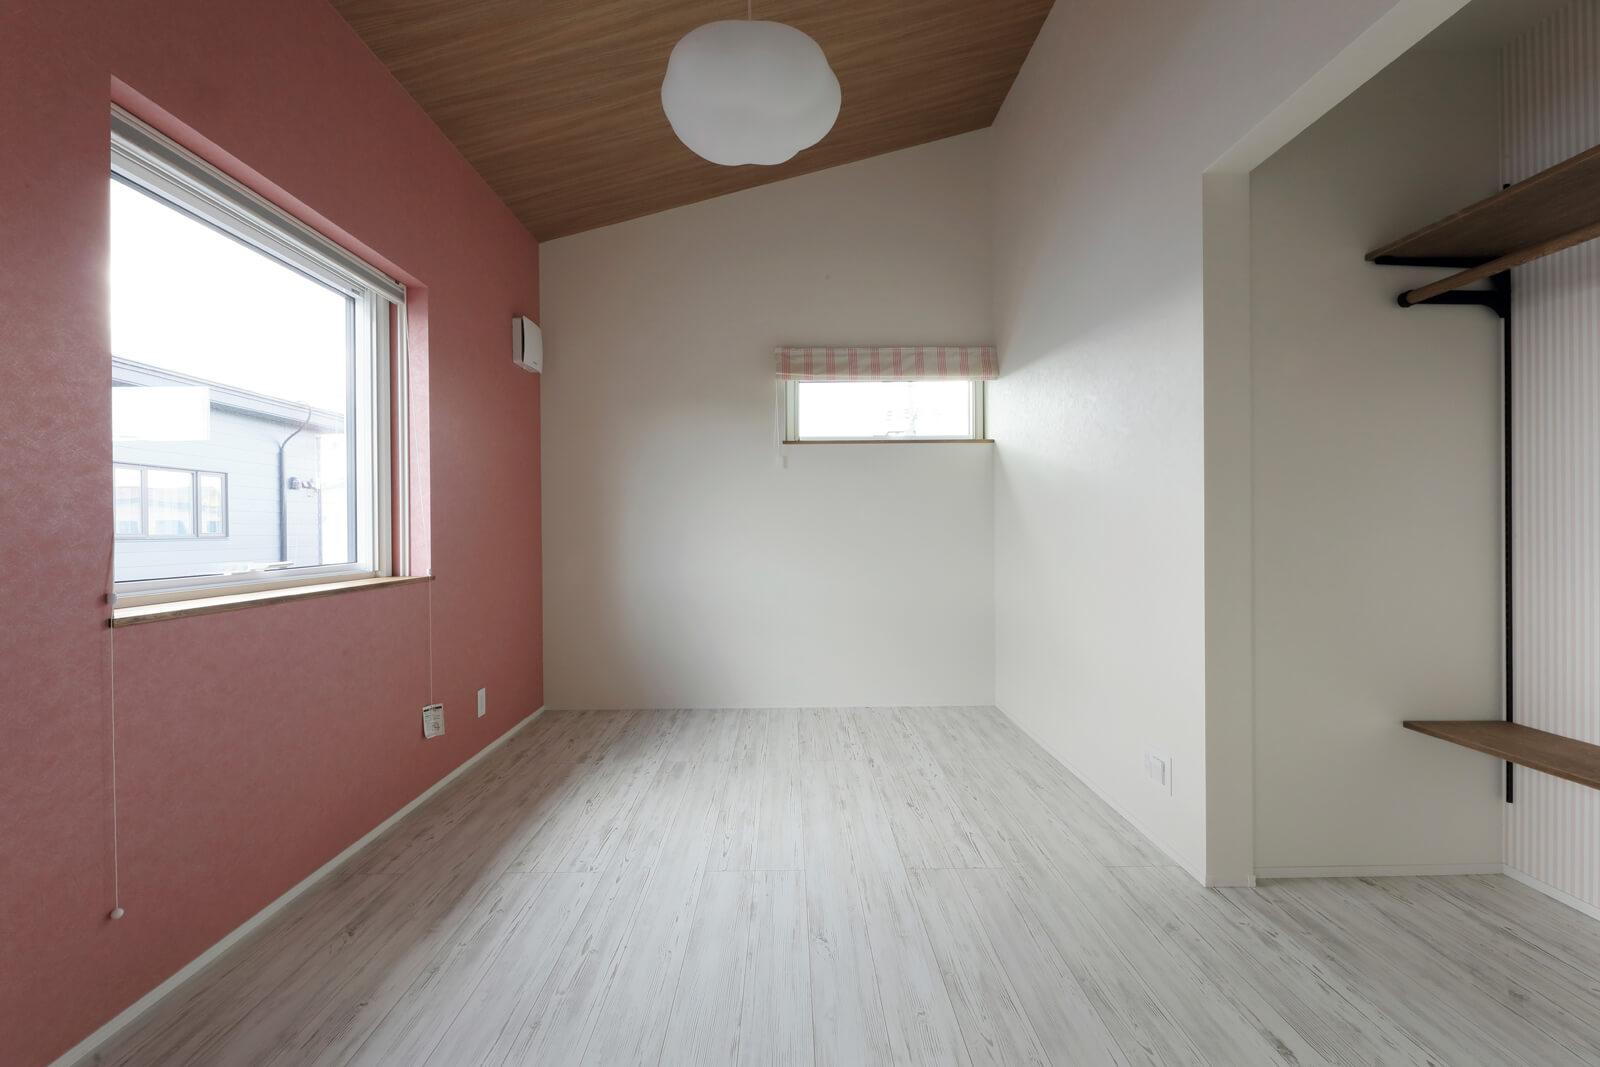 勾配天井が印象的な2階の子ども部屋。収納には扉を設けず、見せる収納を提案